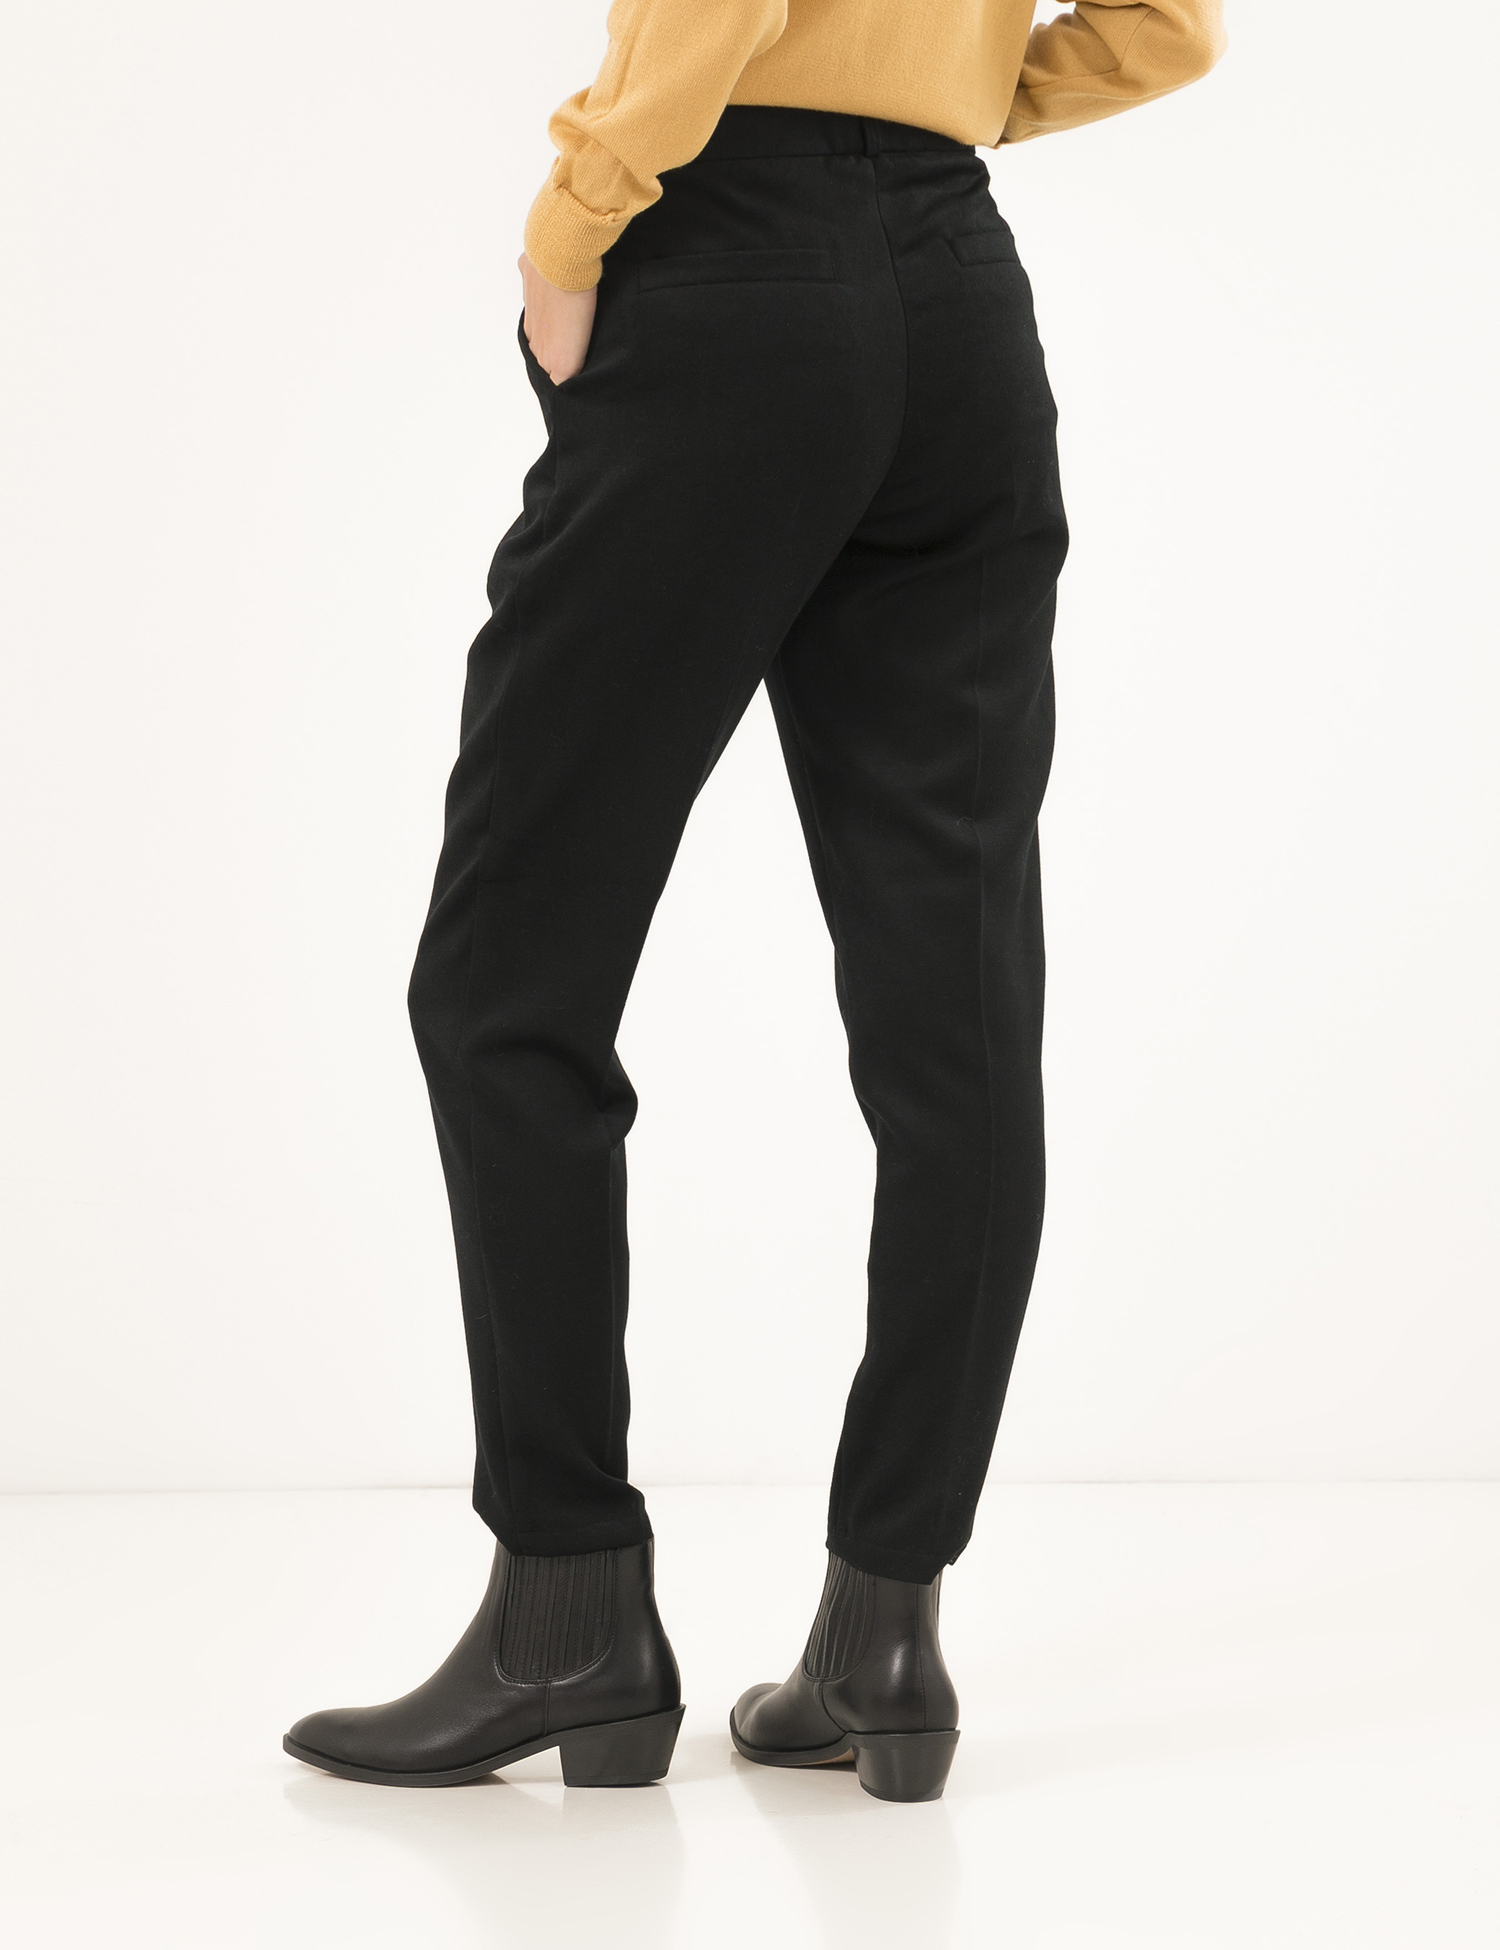 Картинка Жіночі чорні брюки зі стрілками